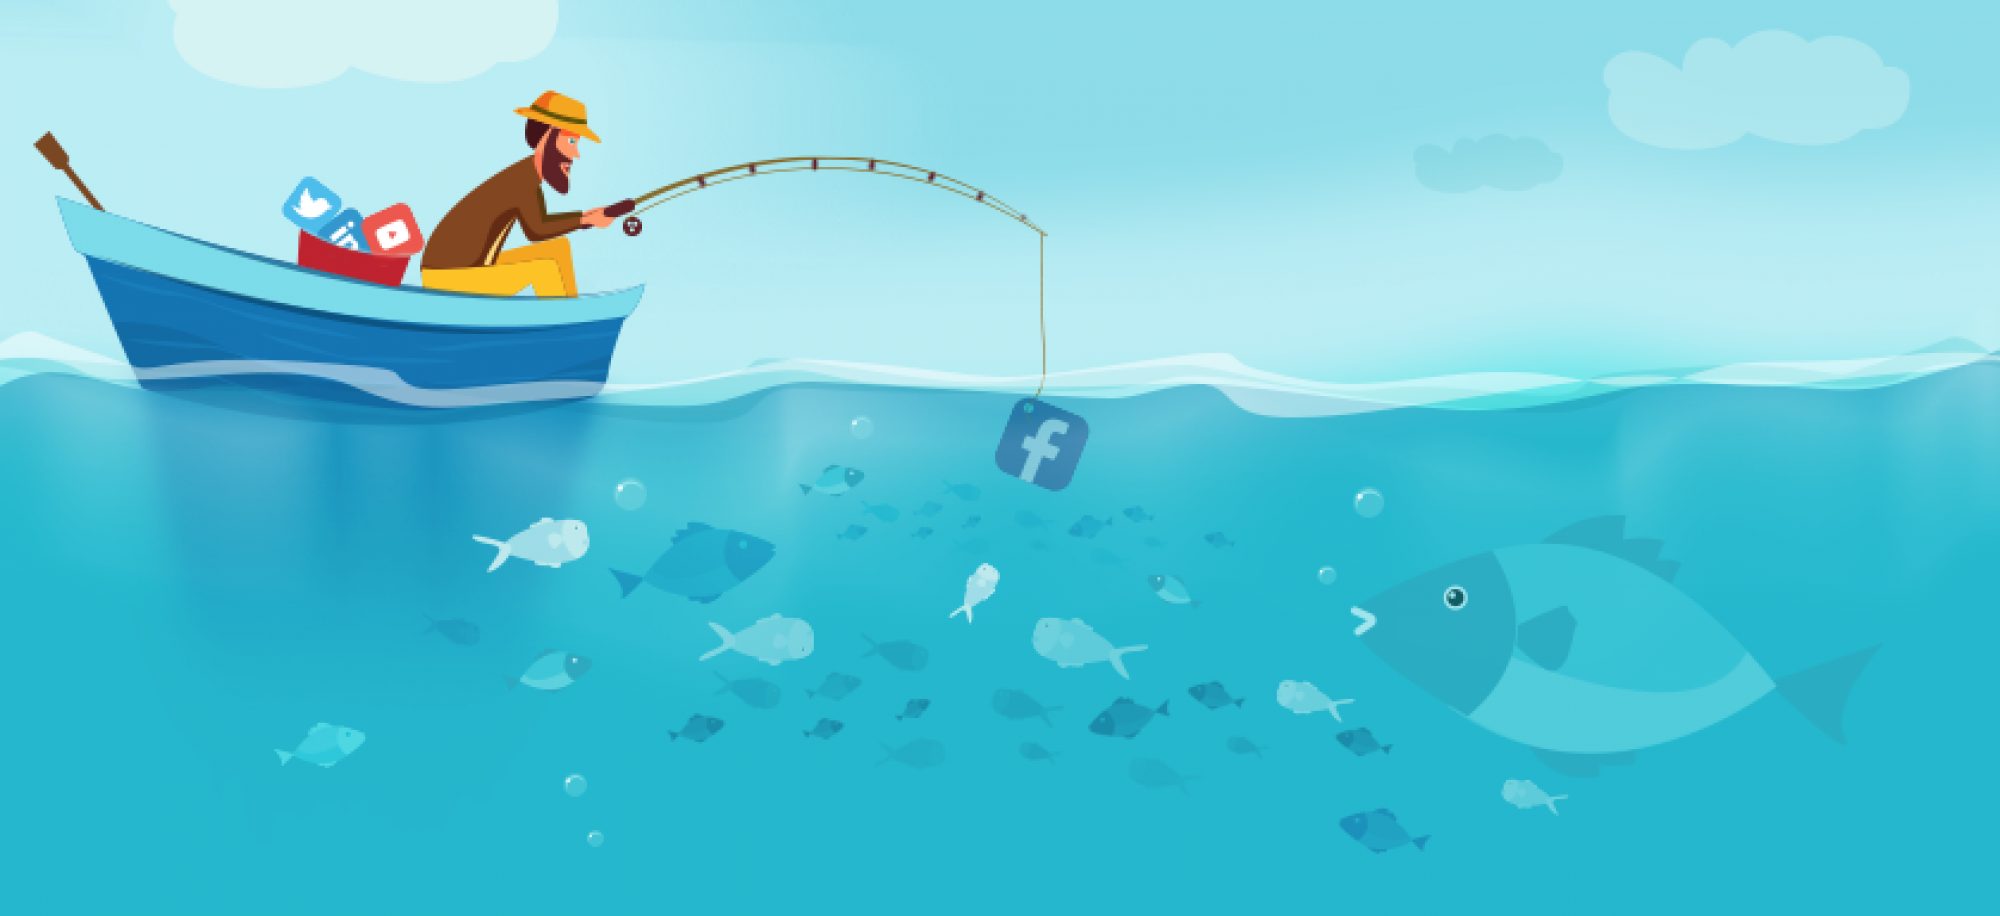 Fishing for new clients? fishing for new clients on social media